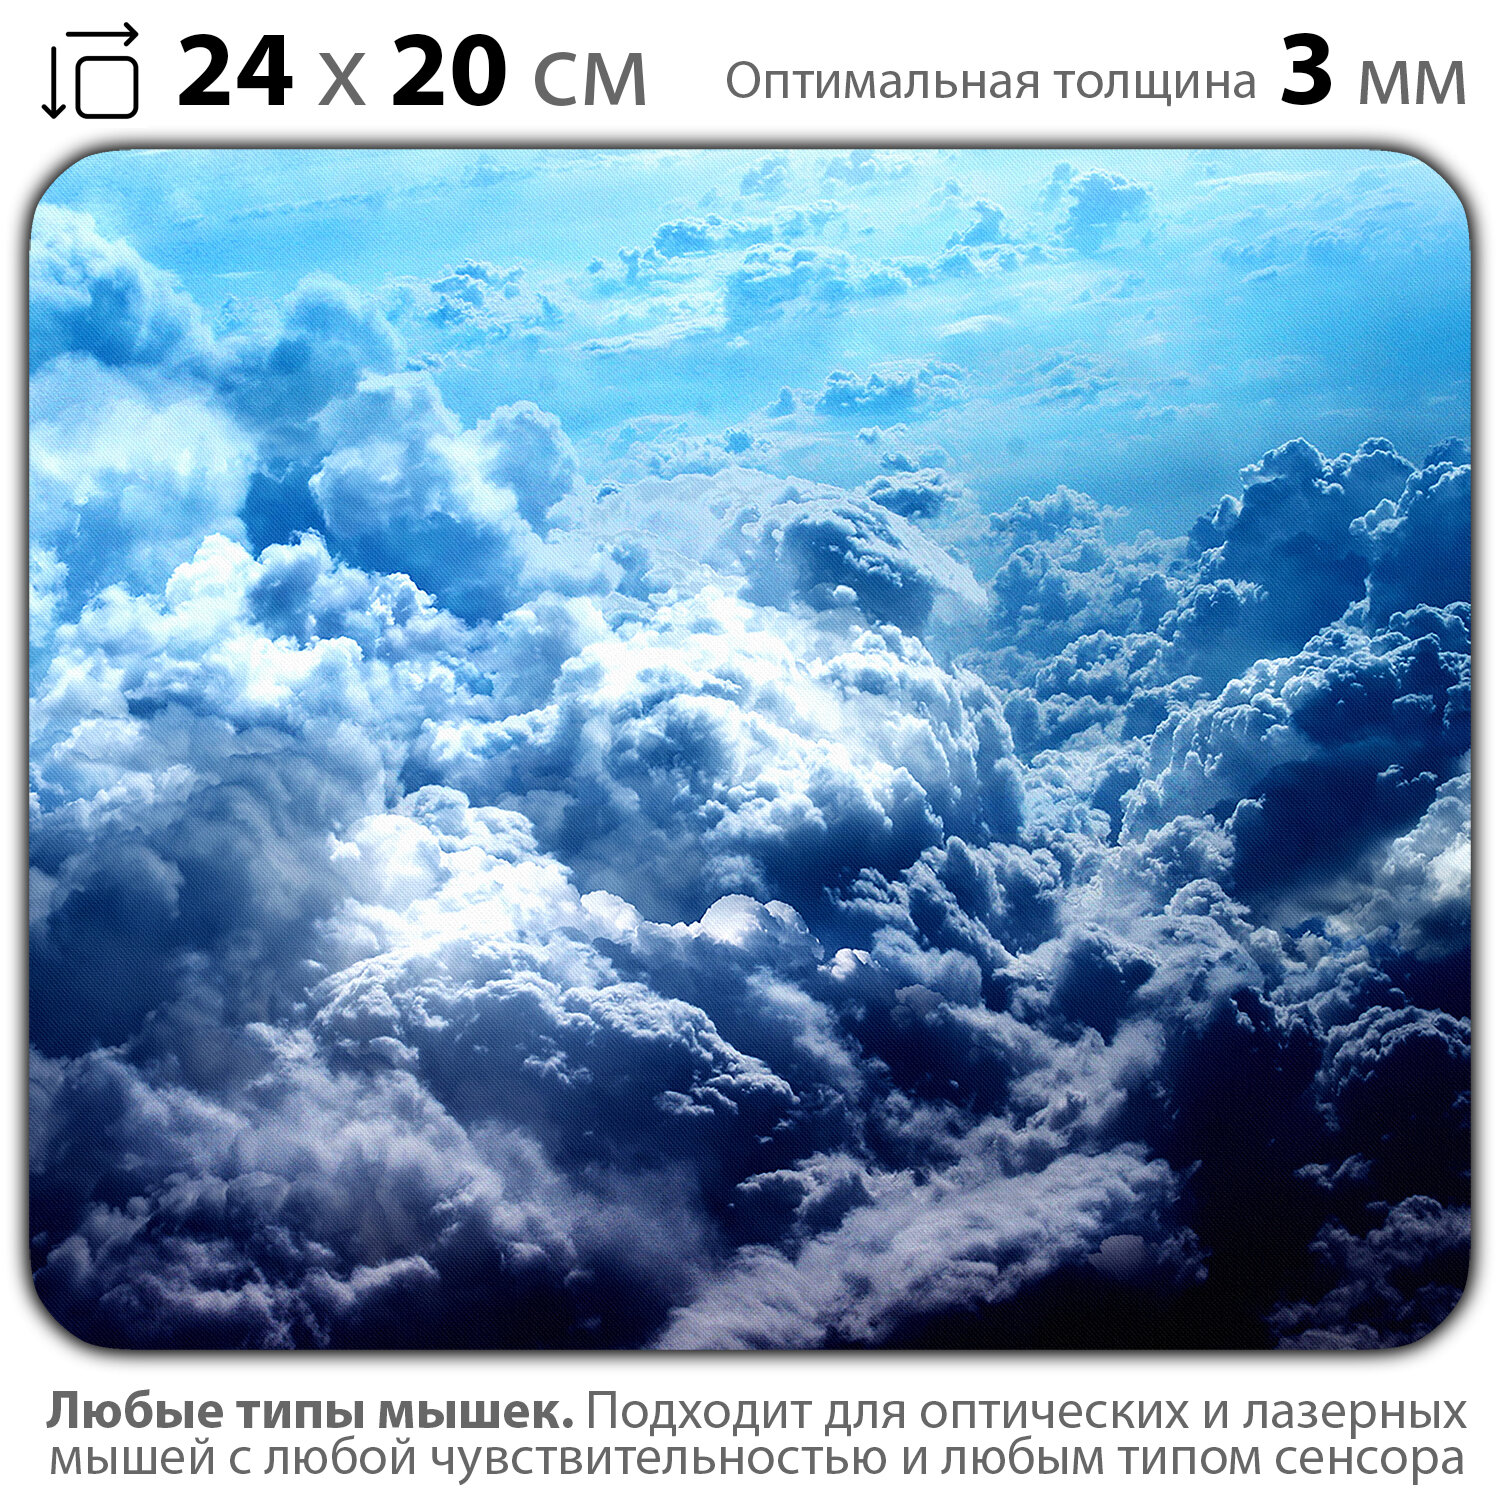 Коврик для мыши "Красивые облака на голубом небе. Мечты о путешествиях" (24 x 20 см x 3 мм)